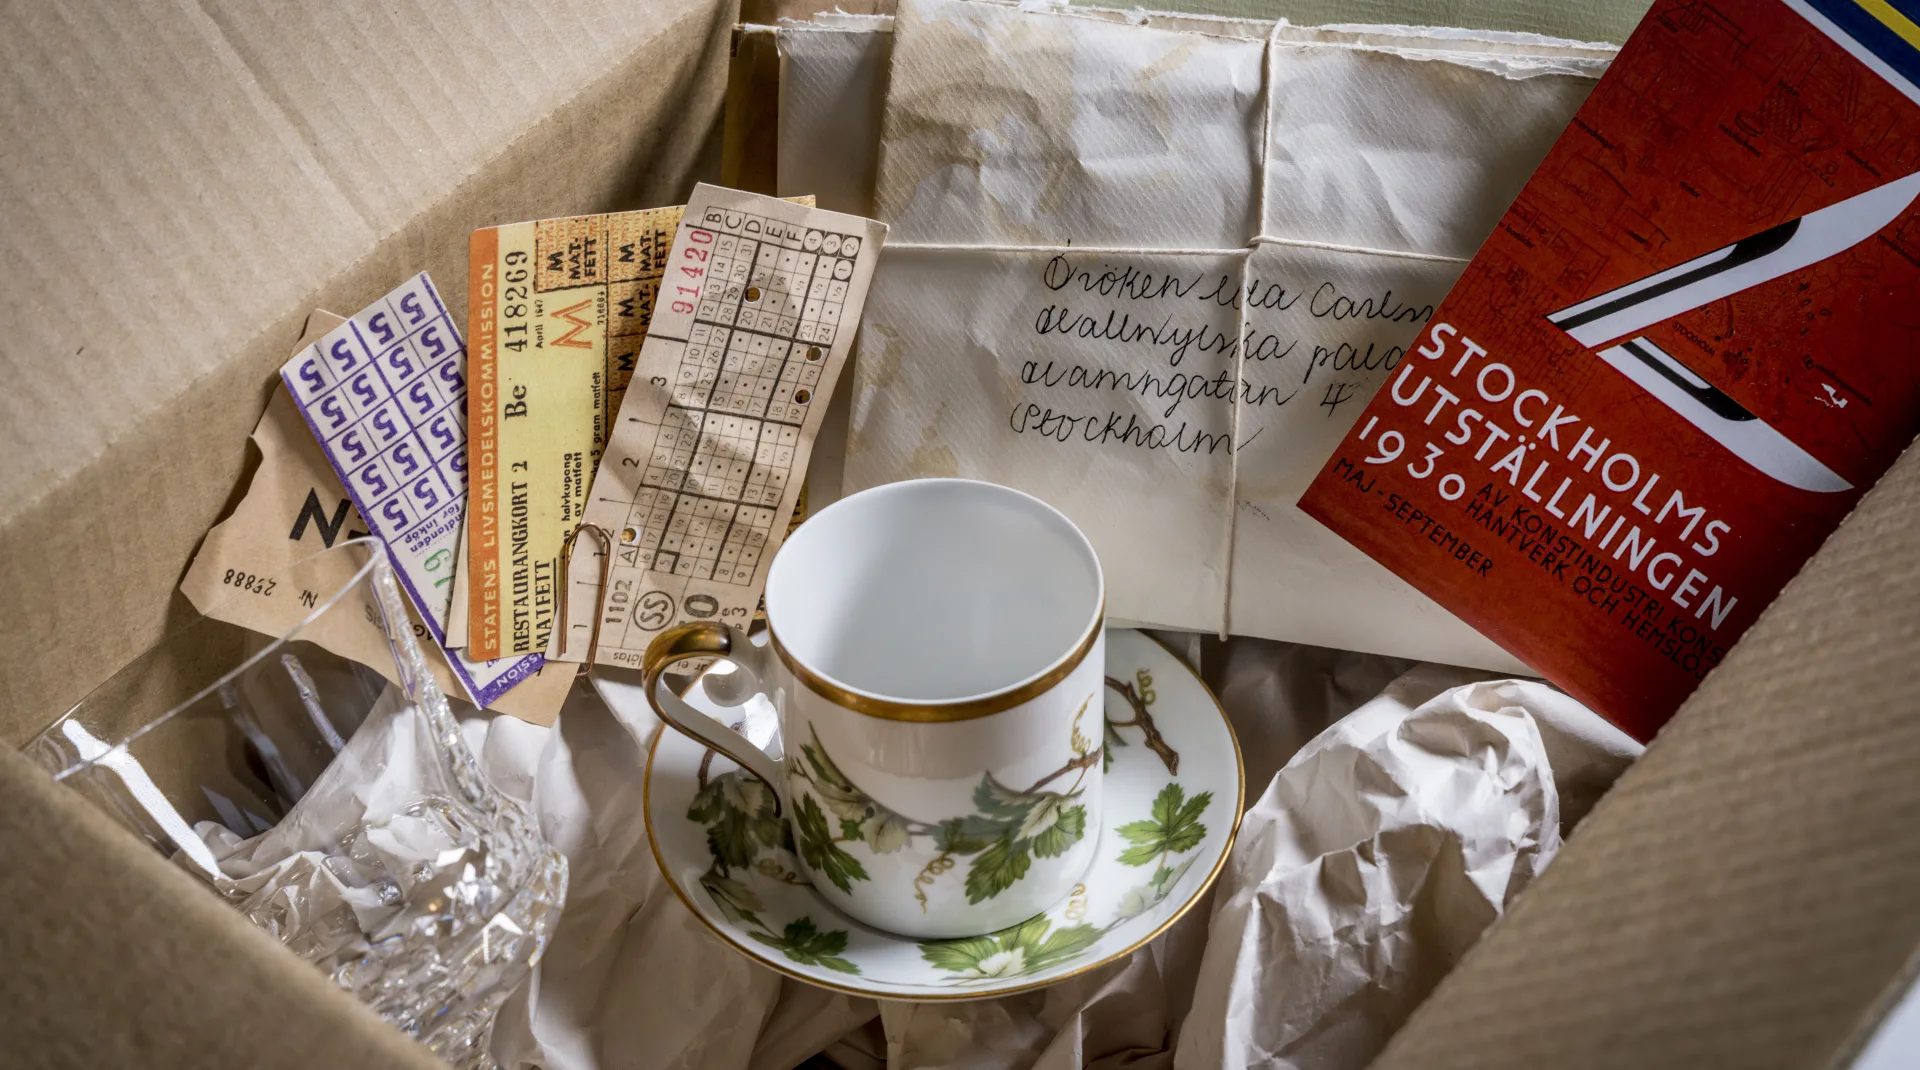 En flyttlåda med gamla saker som en kafffekopp med tillhörande fat, vinglas i kristall, en bunt med restaurangkort, en bunt med brev och kuvert